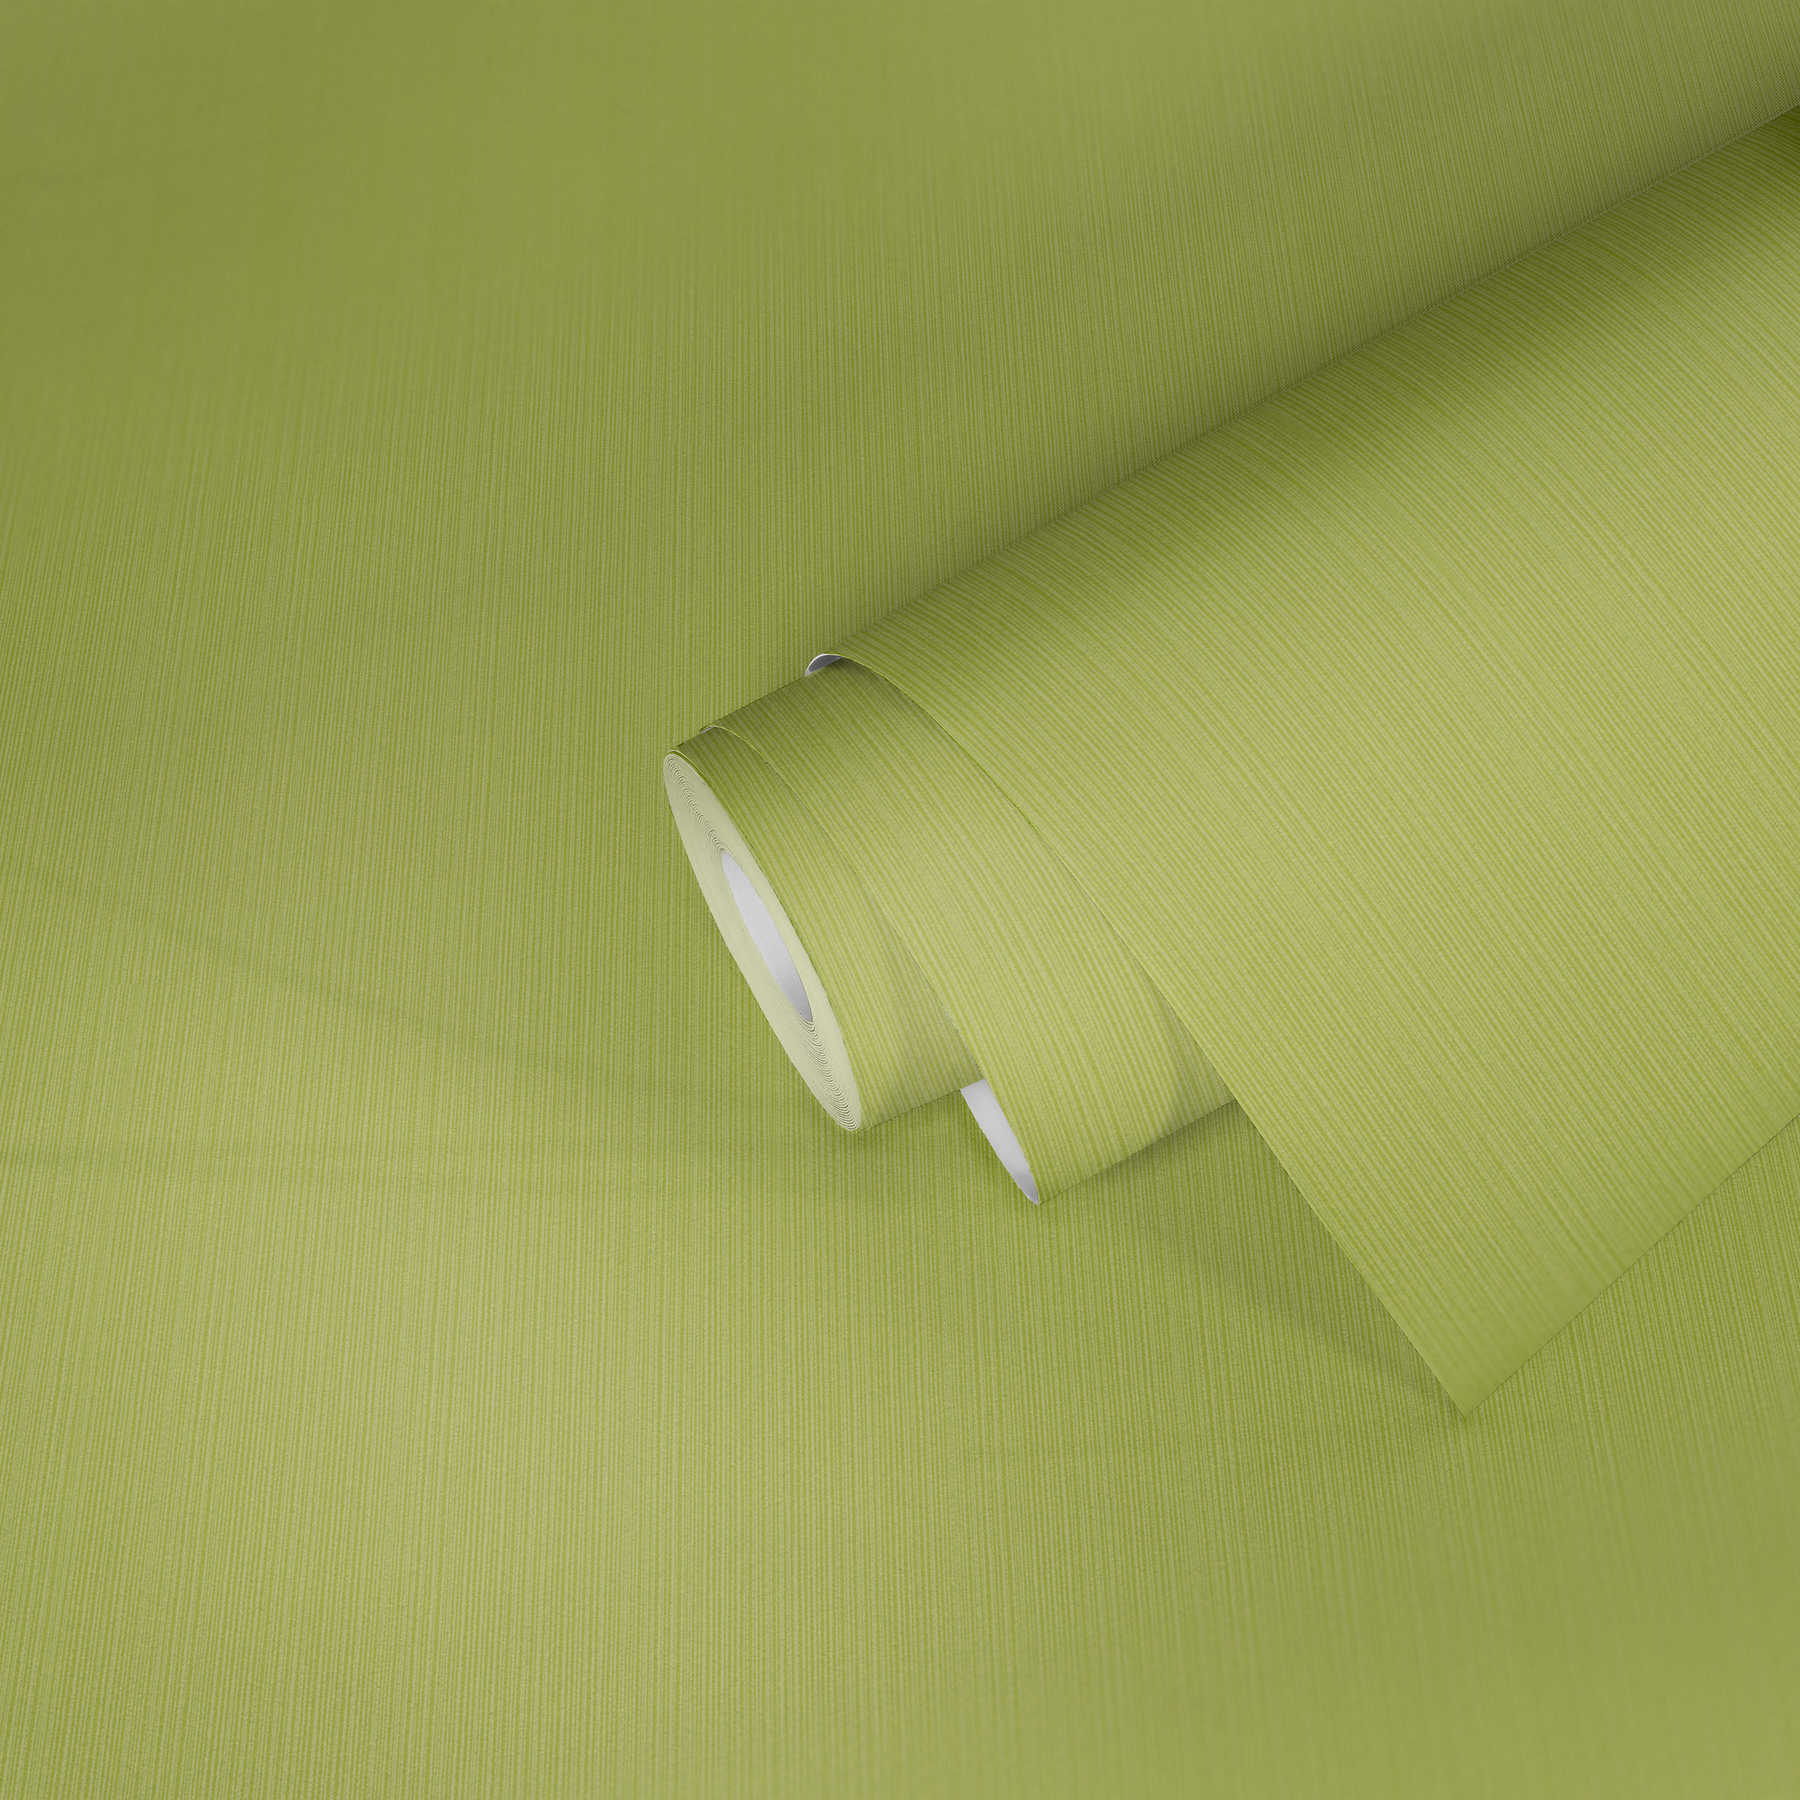             papel pintado verde lima uni, con efecto de textura rayada
        